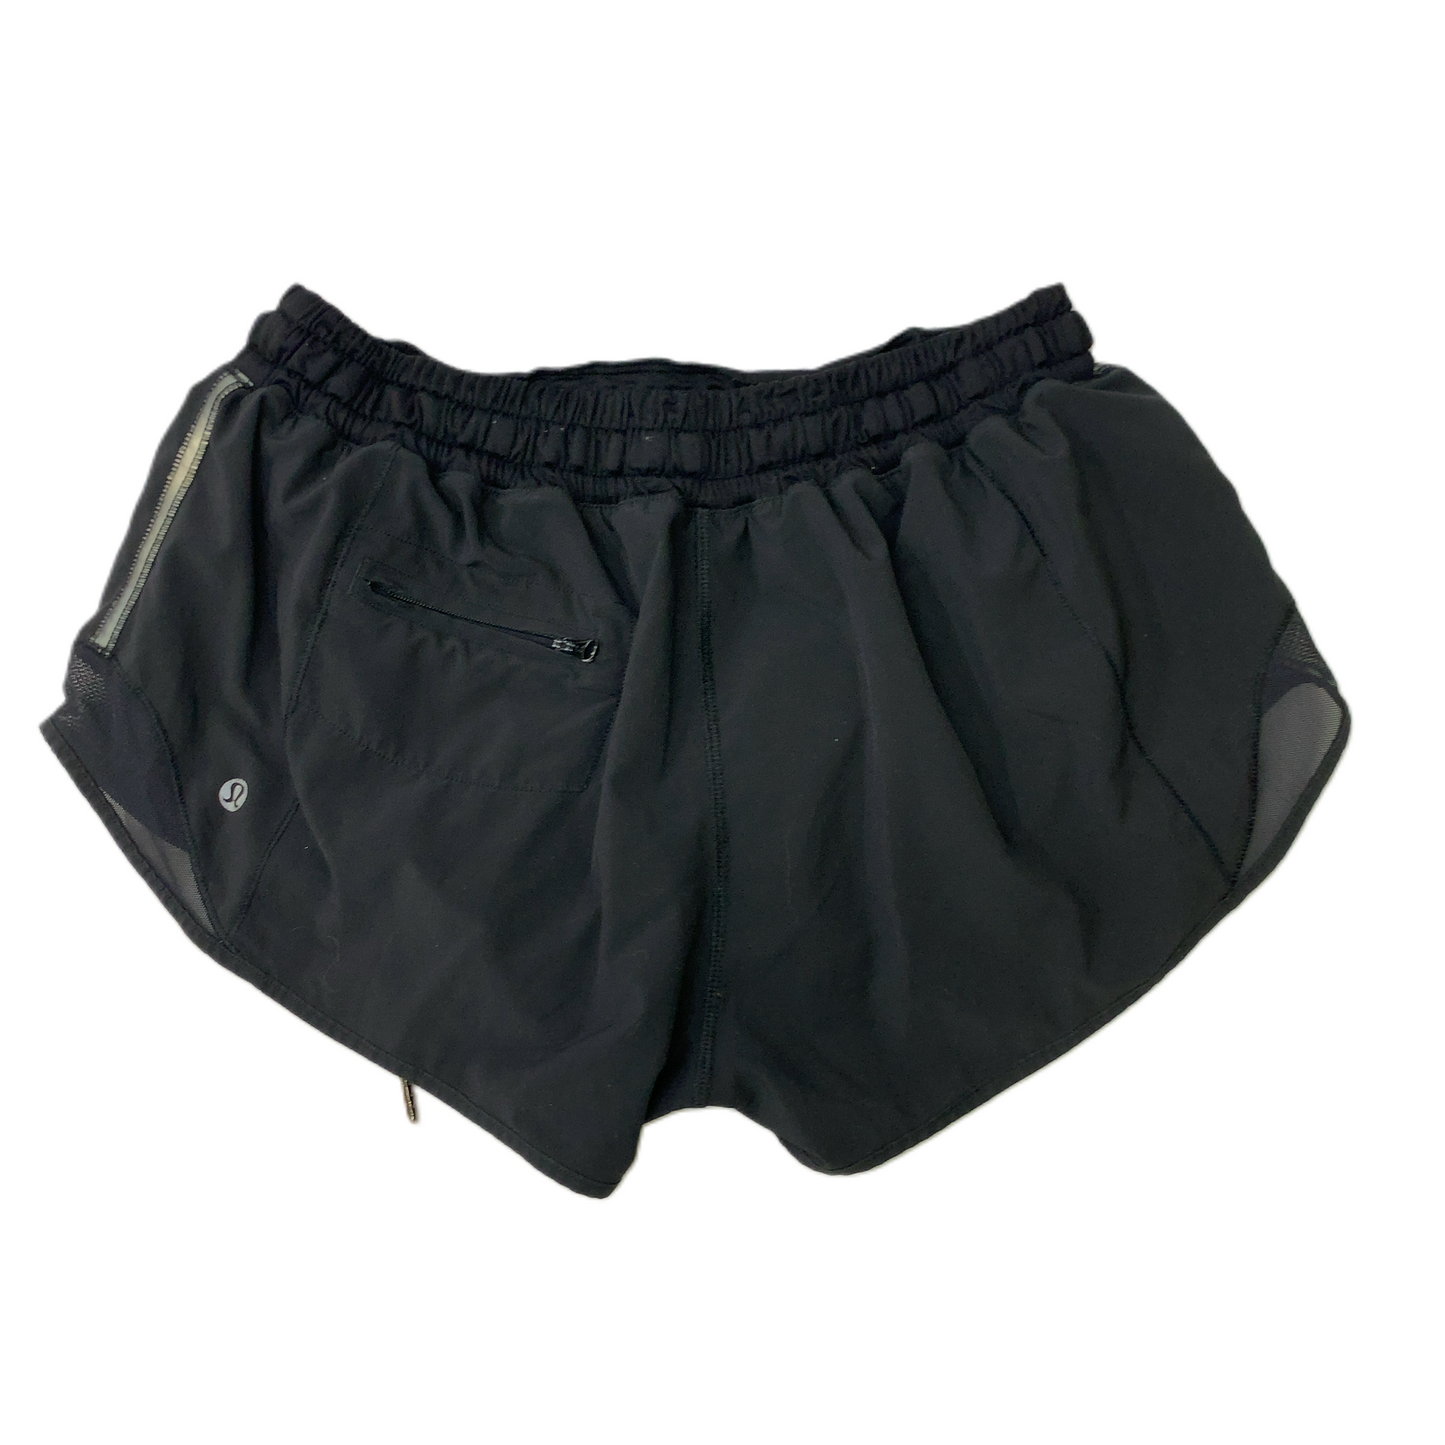 Black  Athletic Shorts By Lululemon  Size: M